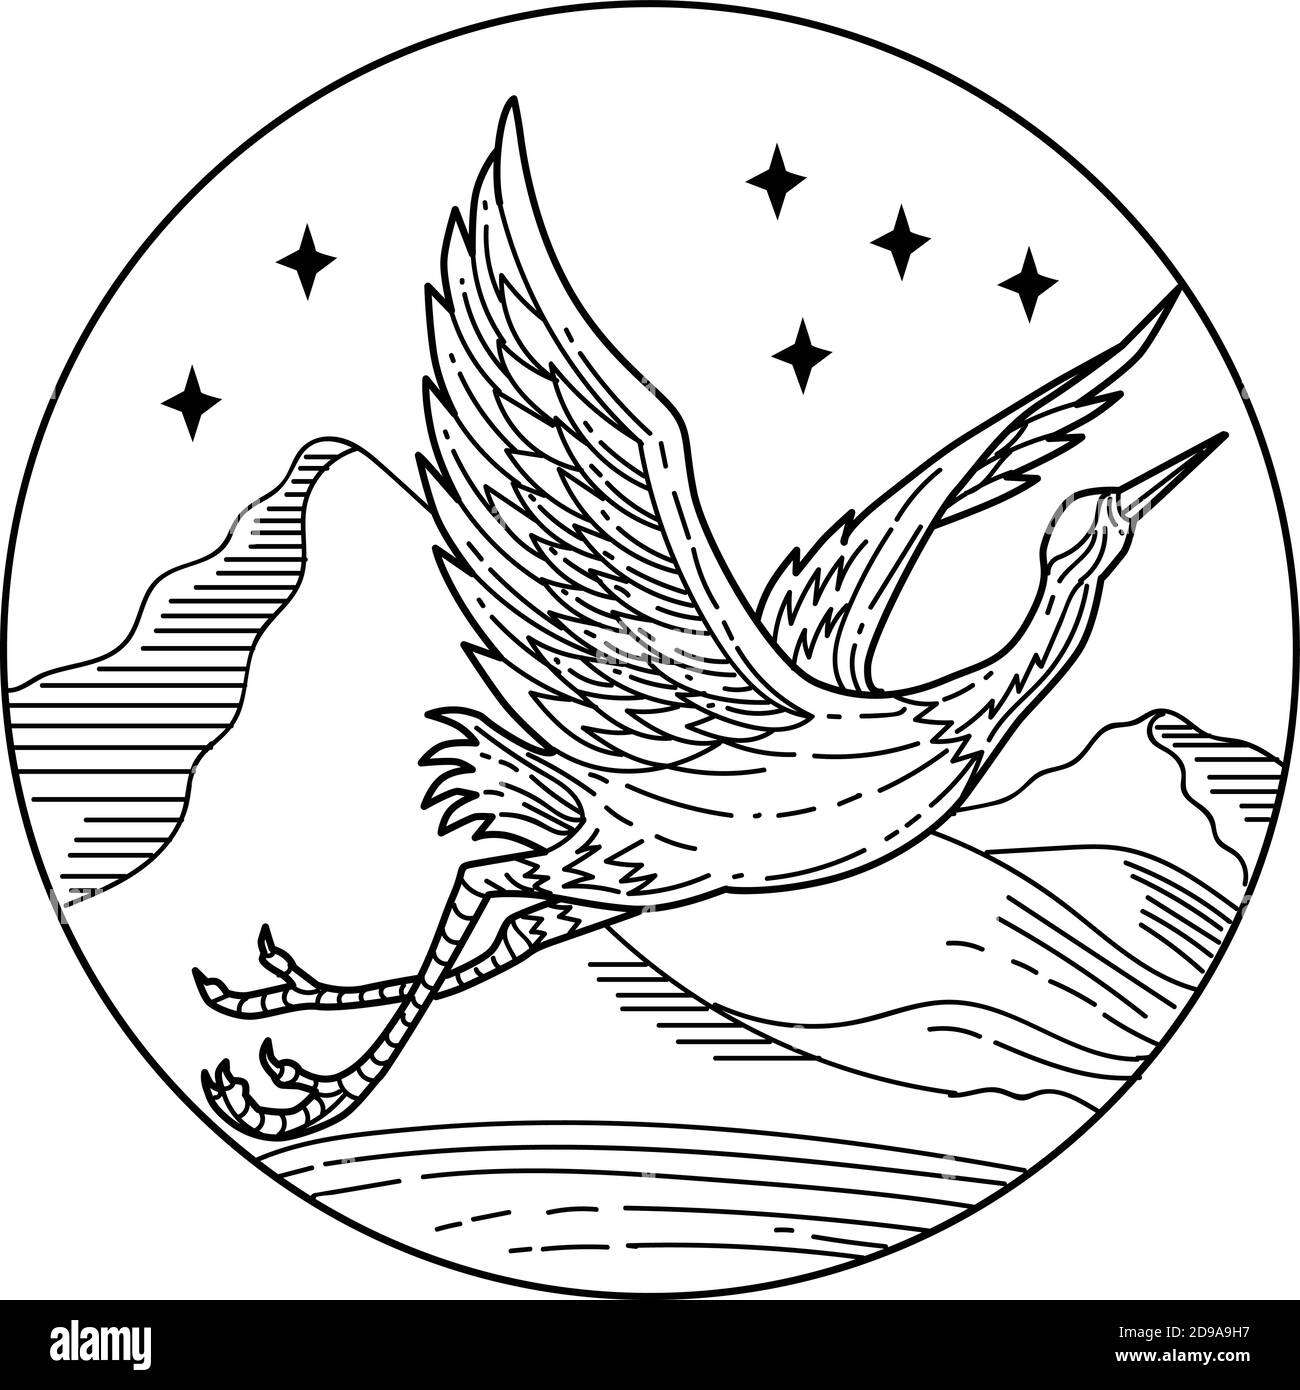 Immagine in bianco e nero di una linea mono di grande airone blu volare visto dal lato all'interno del cerchio con stelle e montagne su isolato Illustrazione Vettoriale